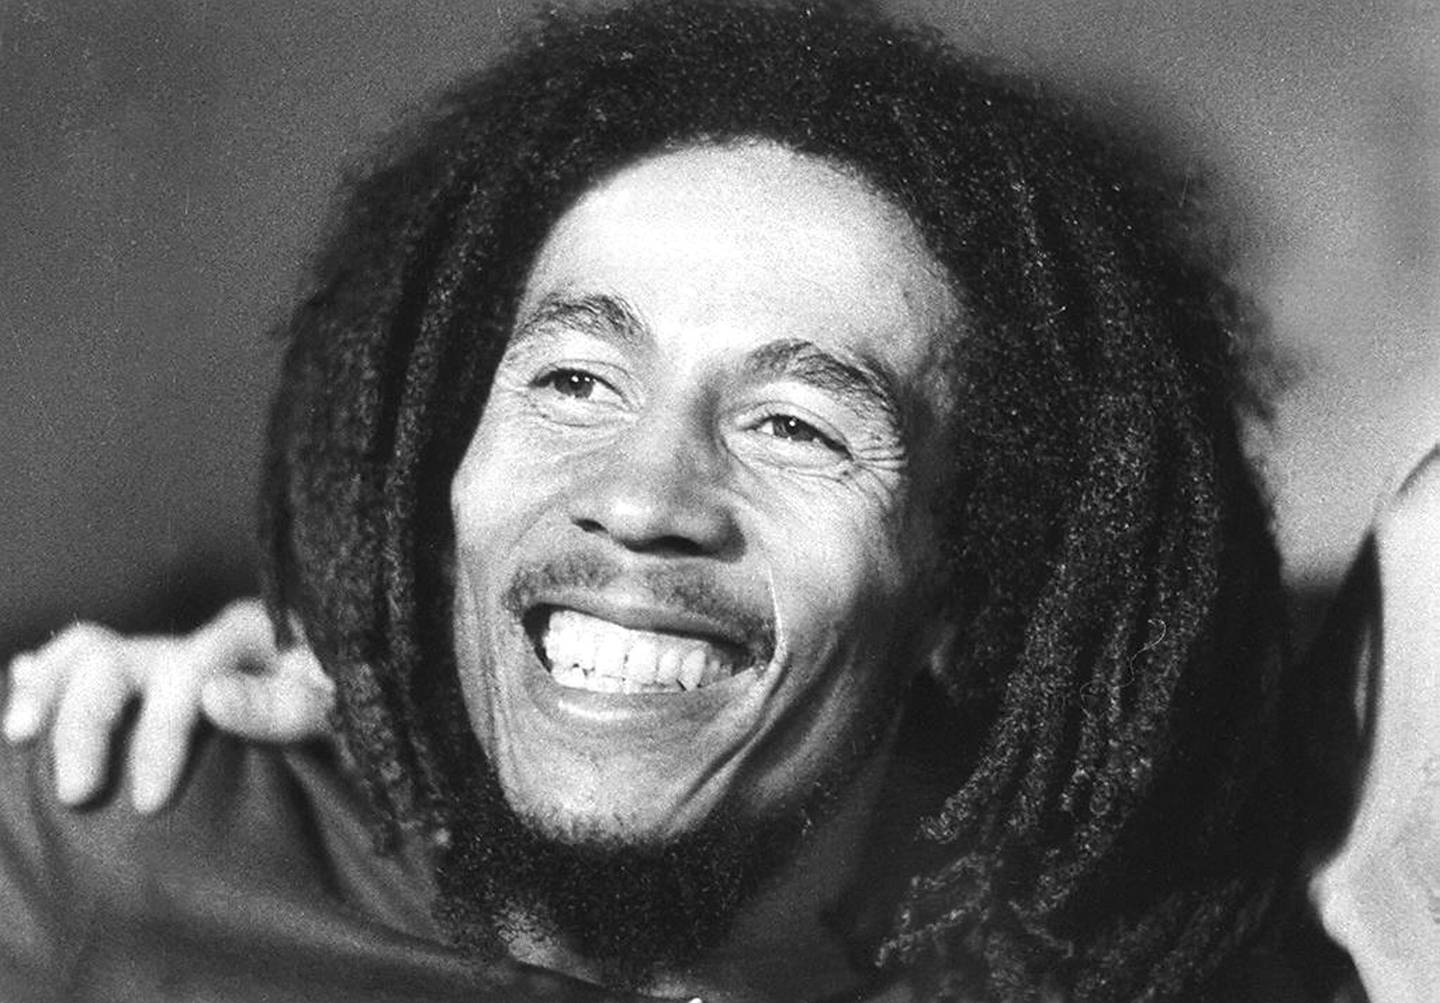 Bob Marley i 1976, året han ble utsatt for et attentat i sitt hjem. Han overlvede, men døde av kreft fem år etter.